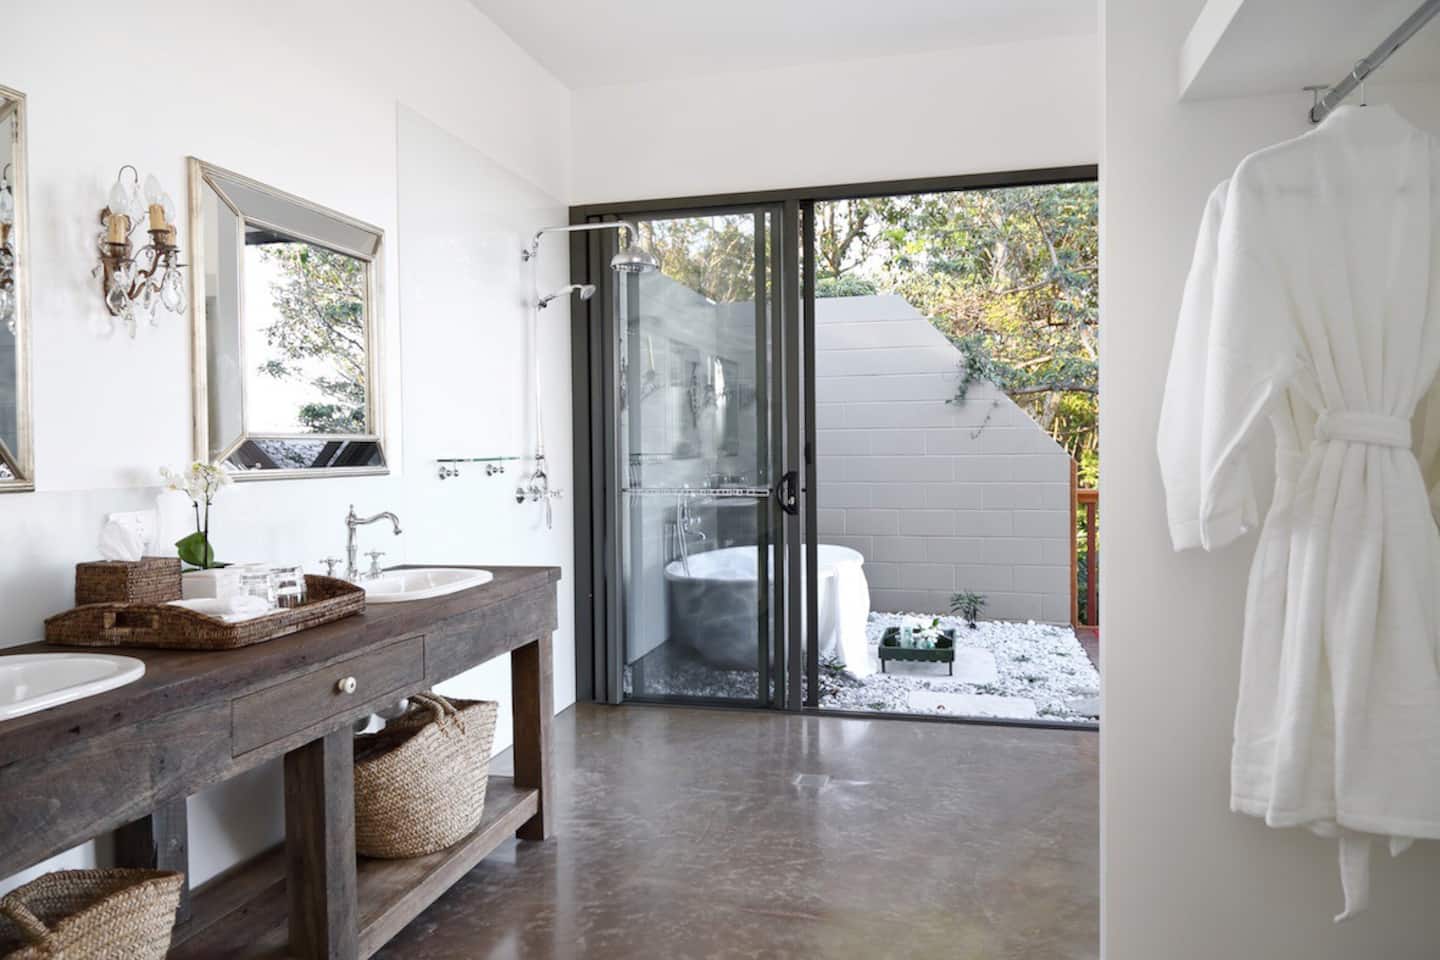 a bath in a courtyard visible through a bathroom door